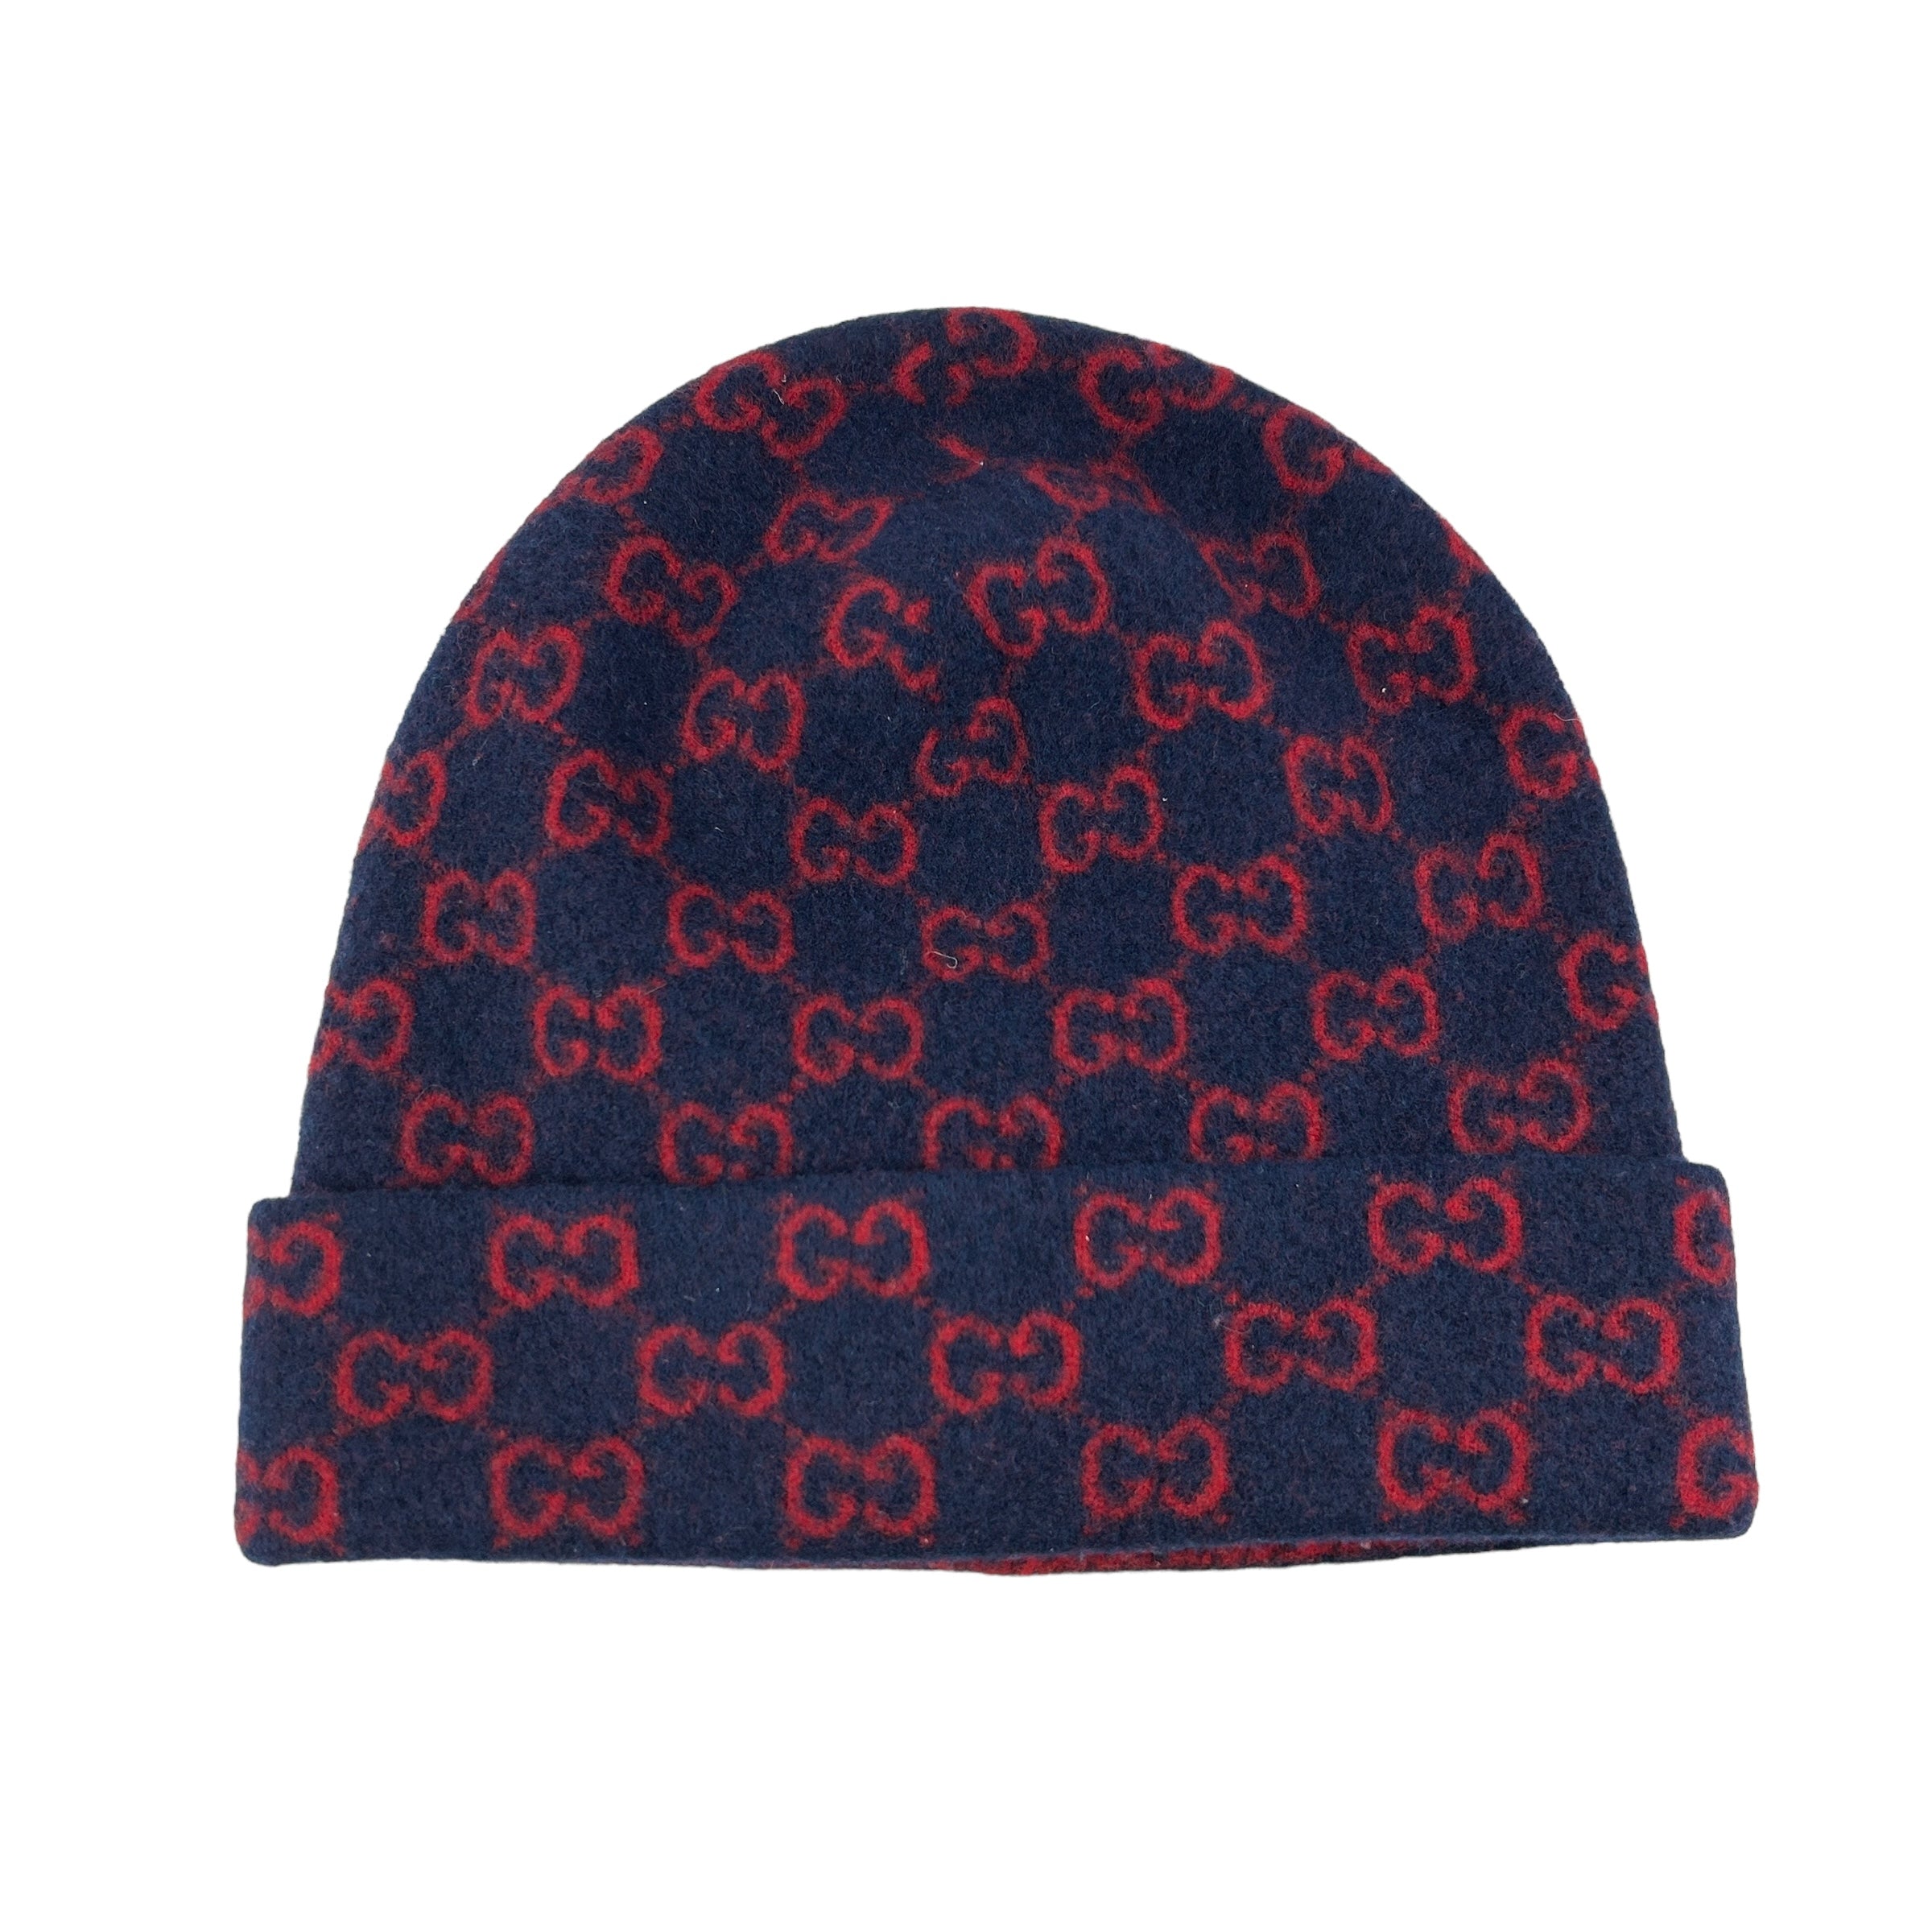 GG Logo Navy/Red Wool Beanie Hat